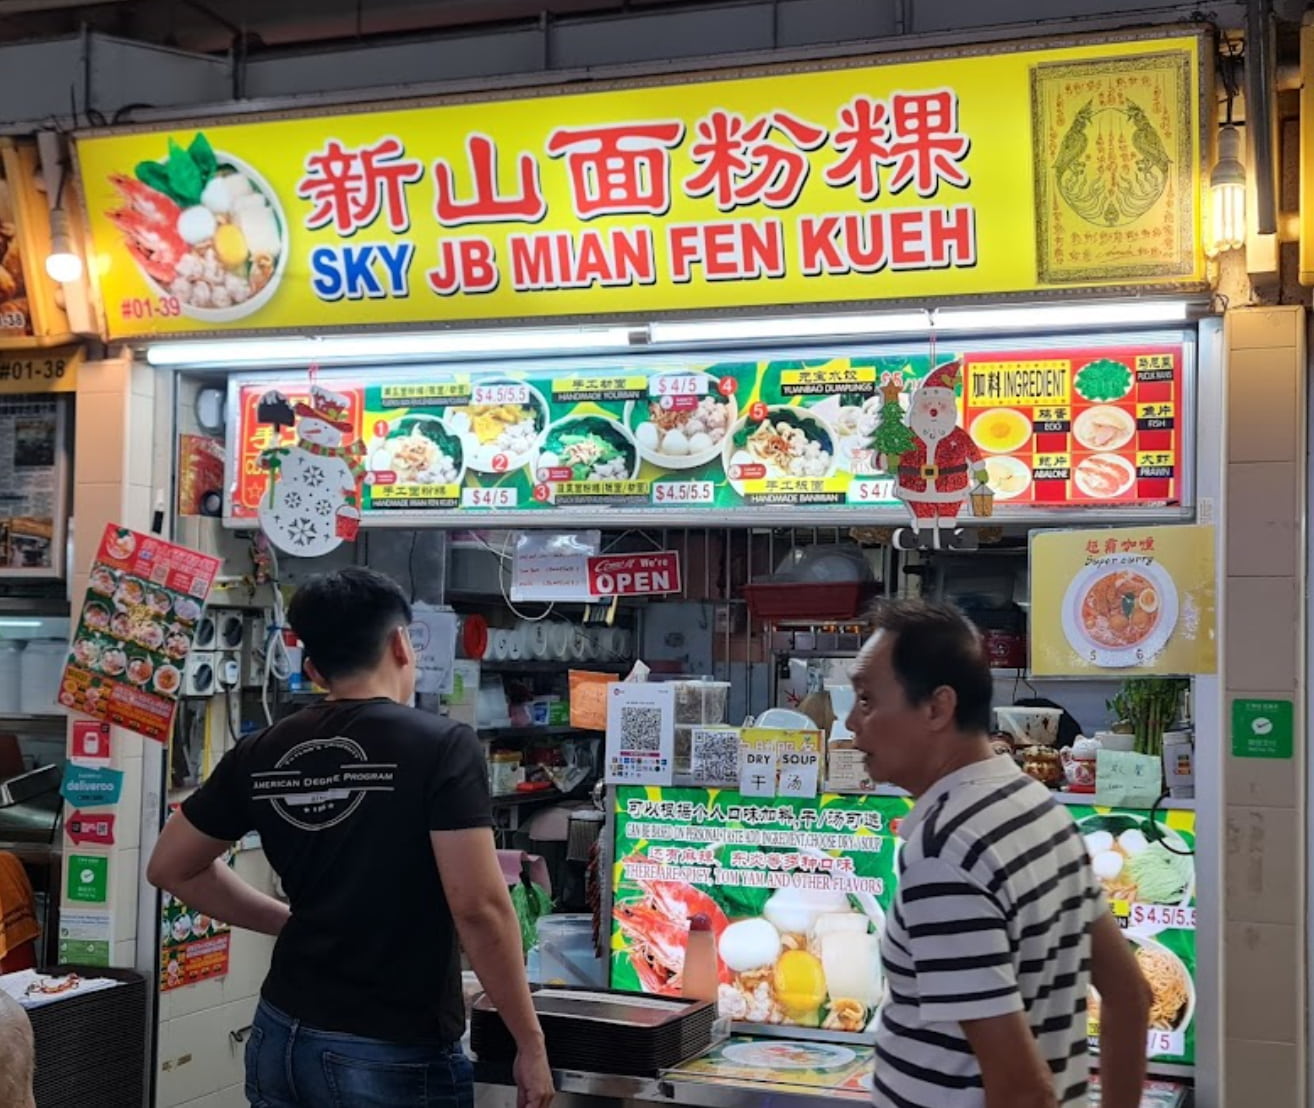 sky-jb-mian-fen-kueh-stall